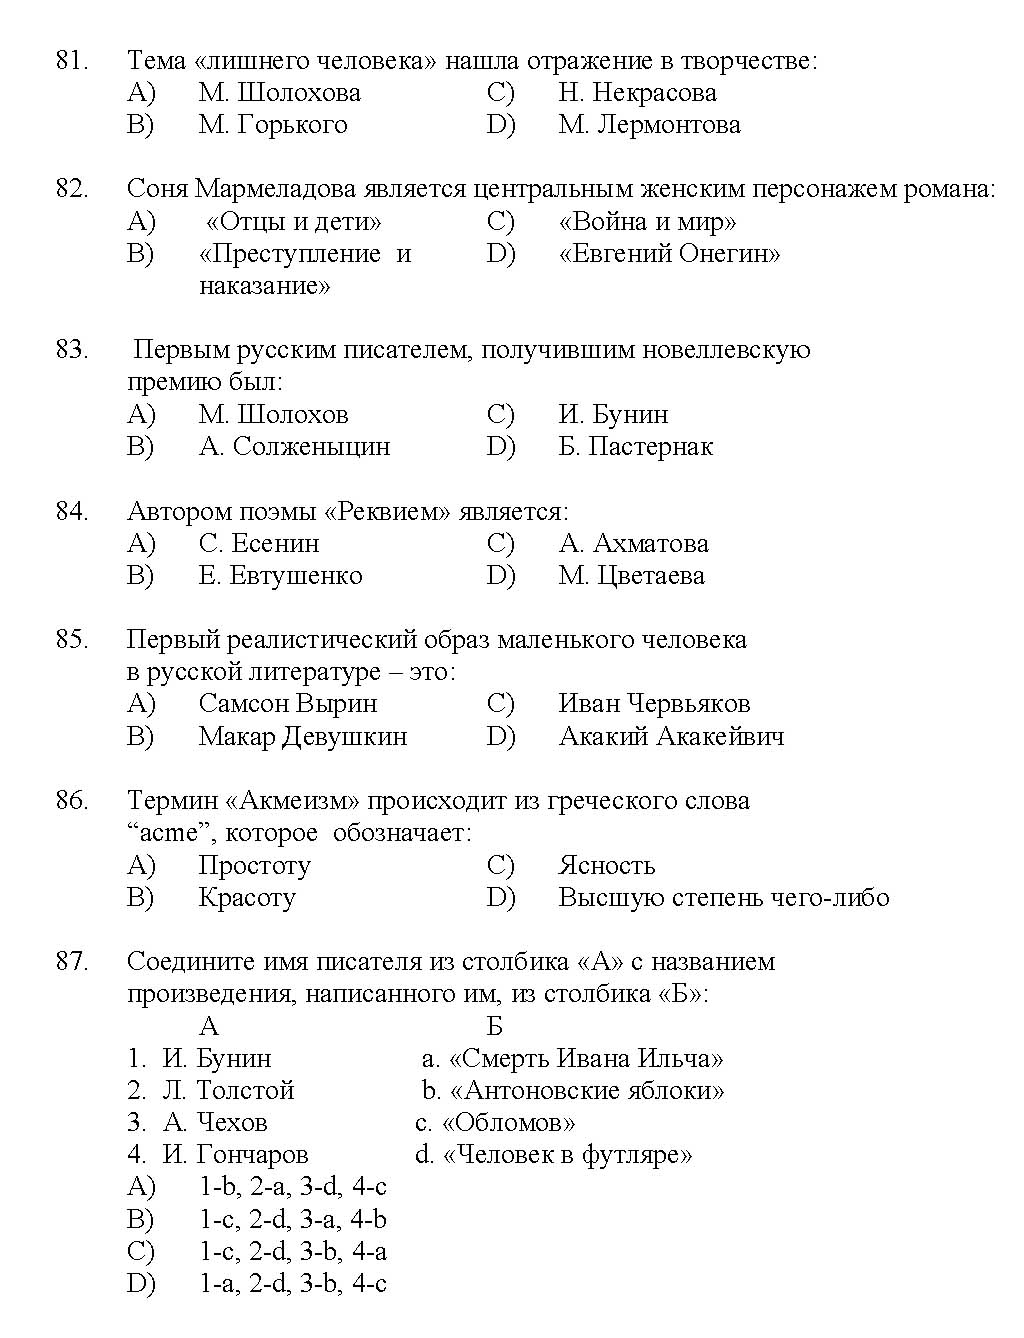 Kerala SET Russian Exam 2017 Question Code 17227 A 14